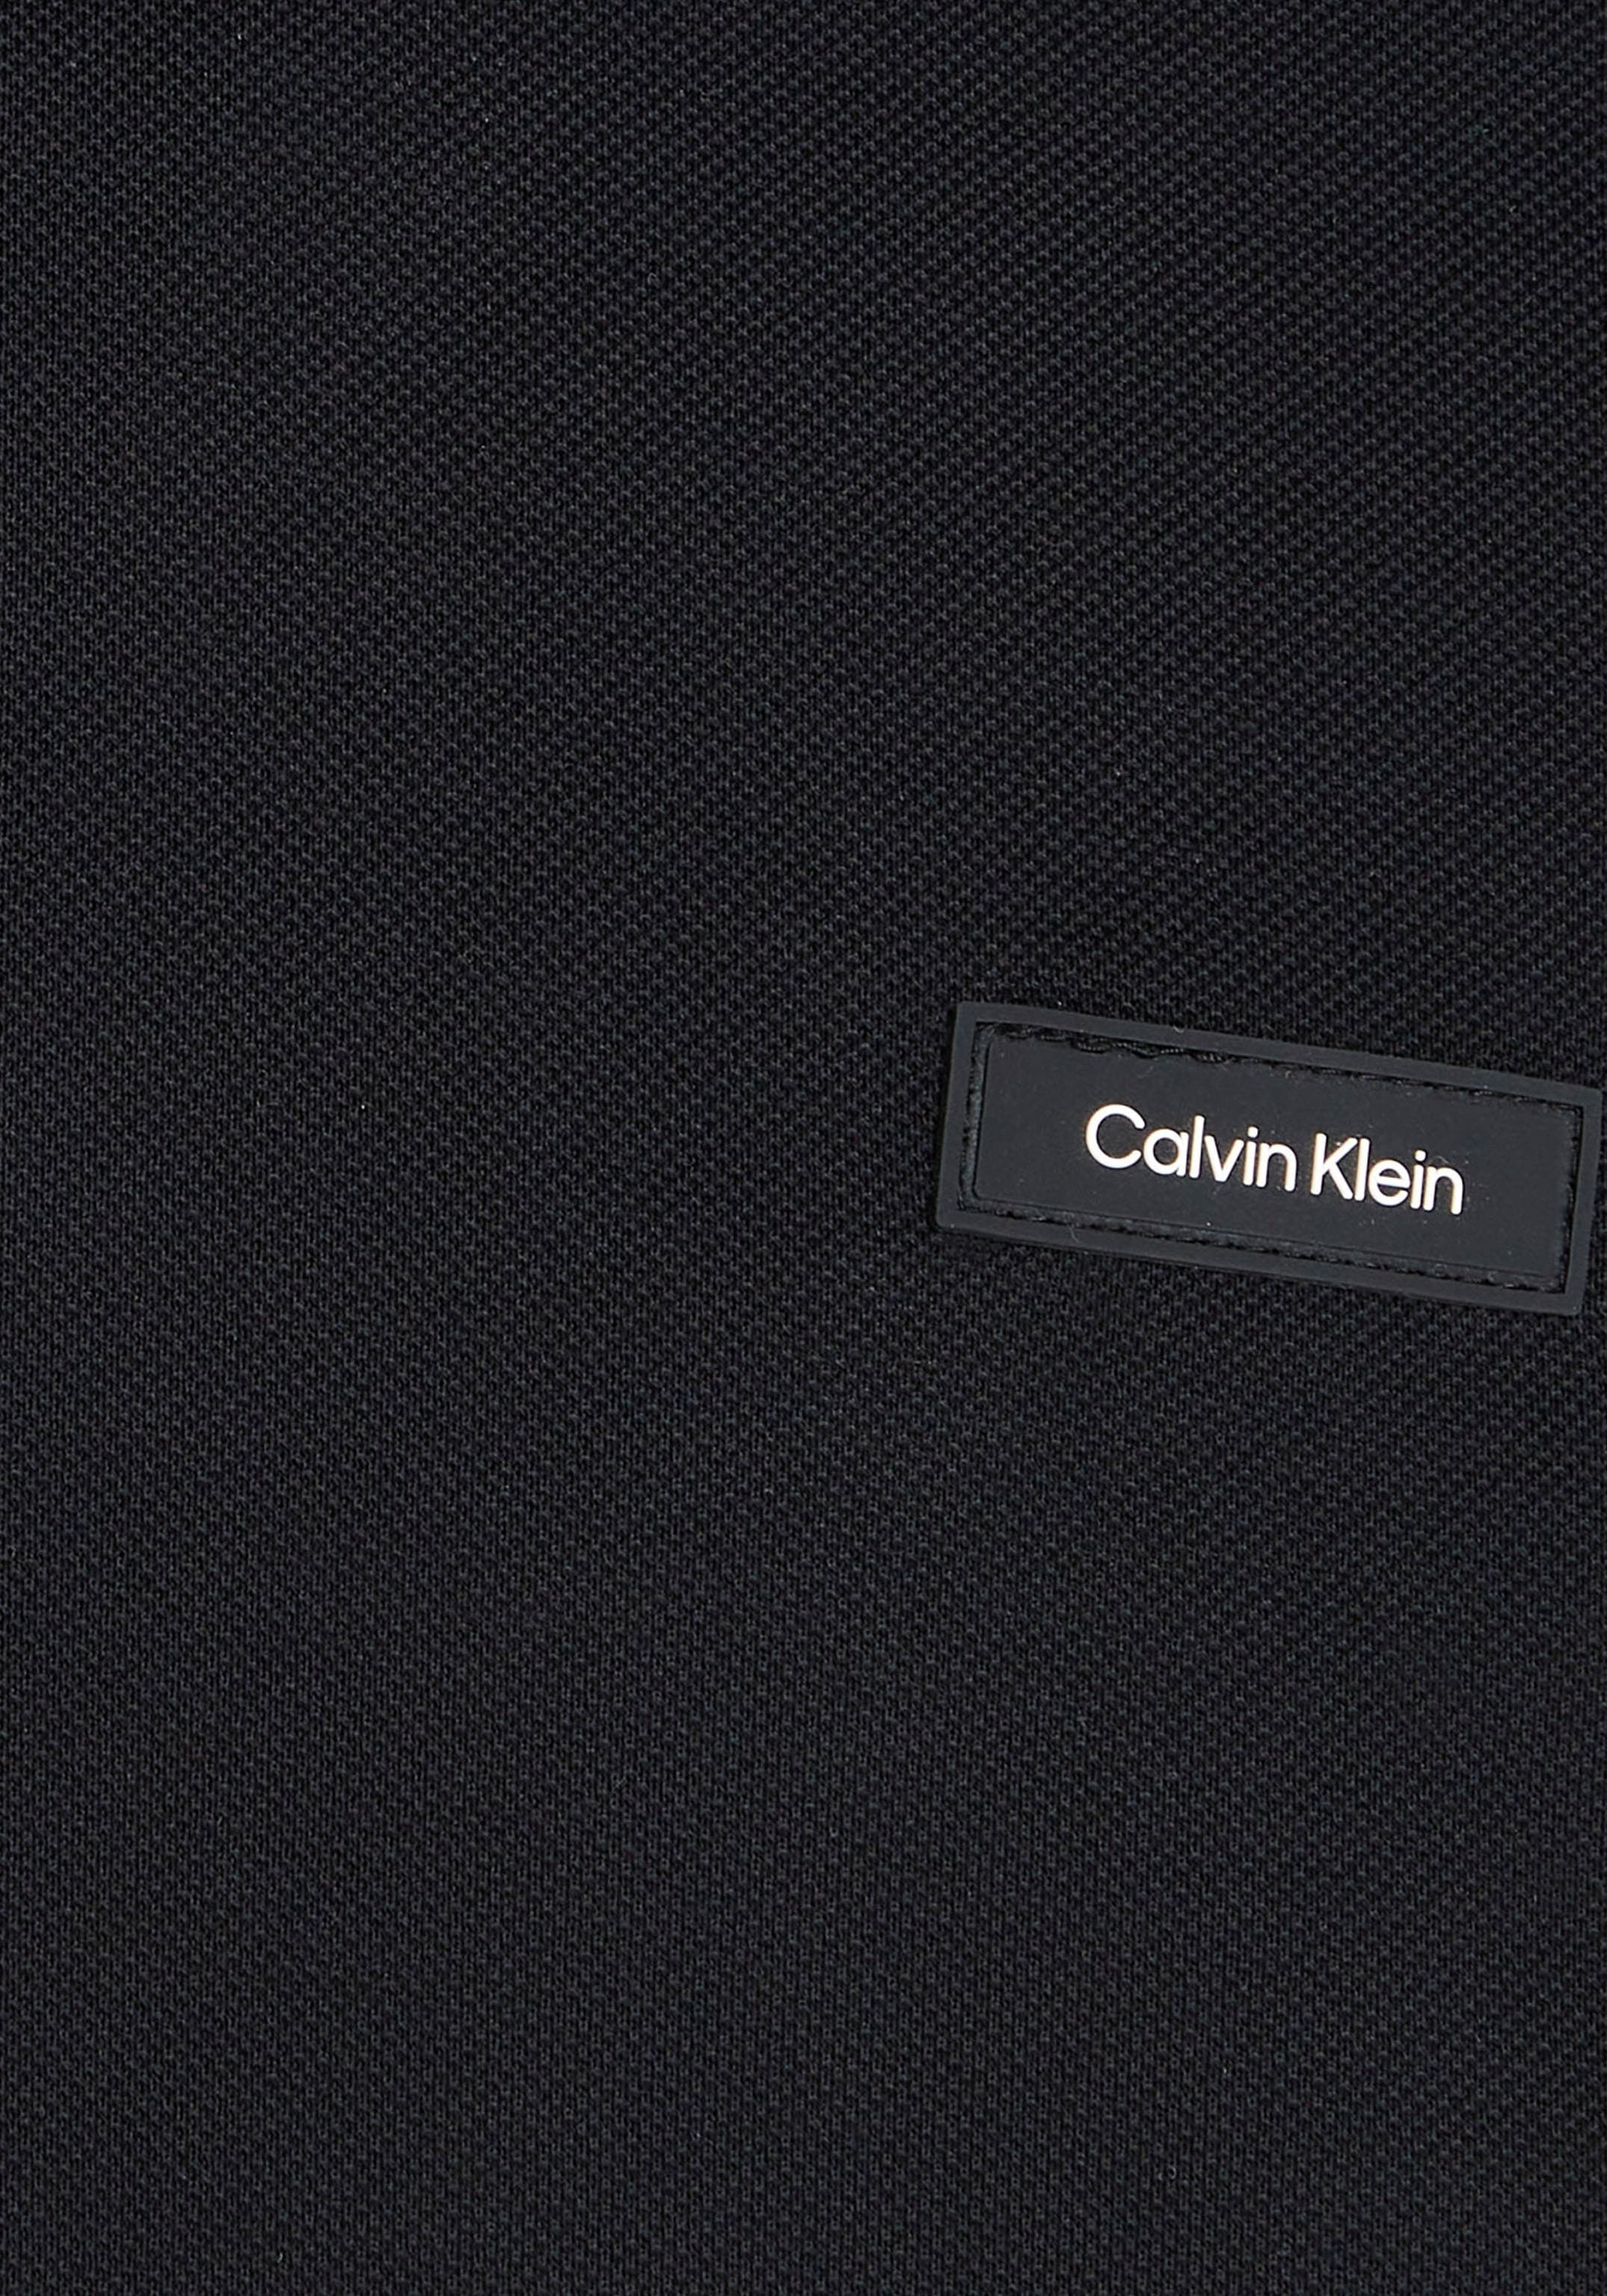 Calvin Klein Brust ♕ bei Klein Calvin der auf Poloshirt, Logo mit